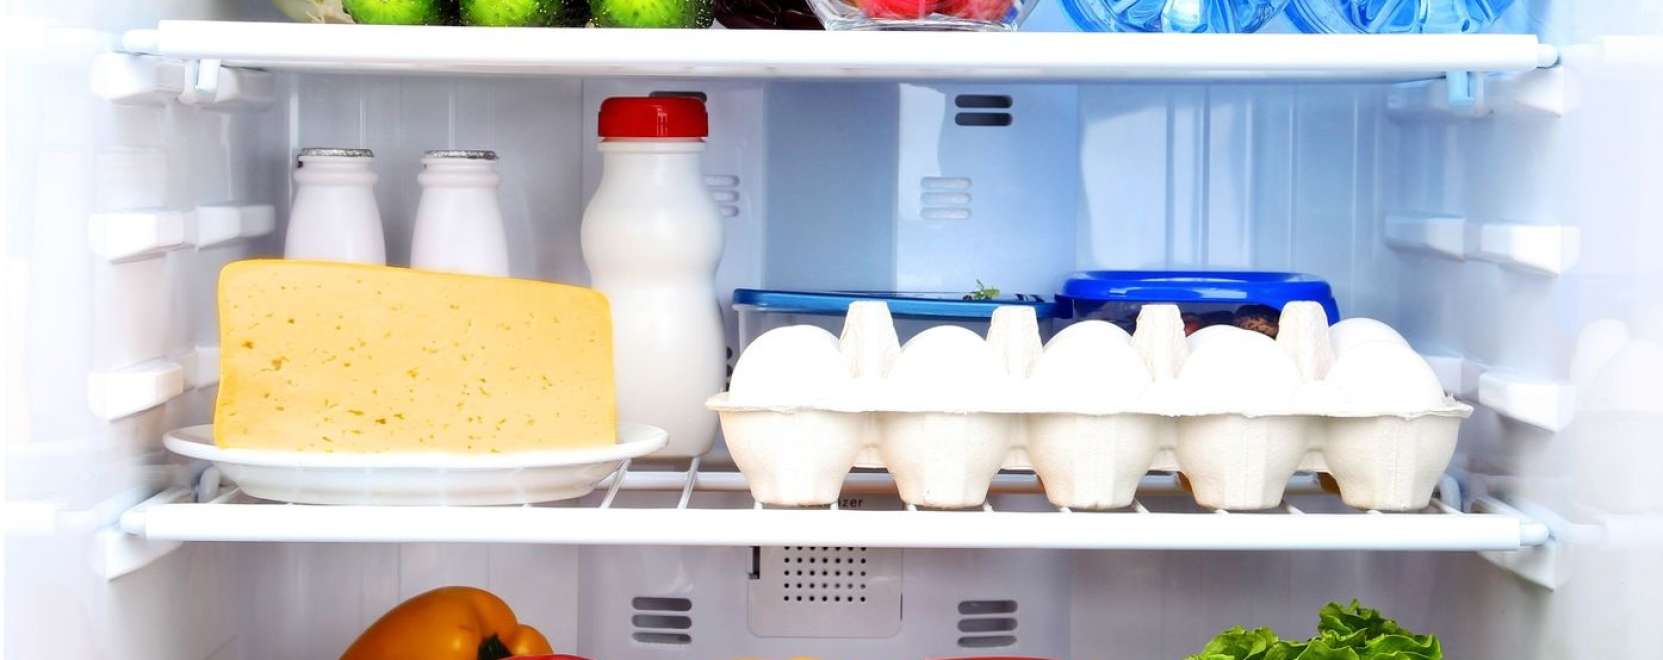 Mostantól akár a hűtő is elintézheti a bevásárlást